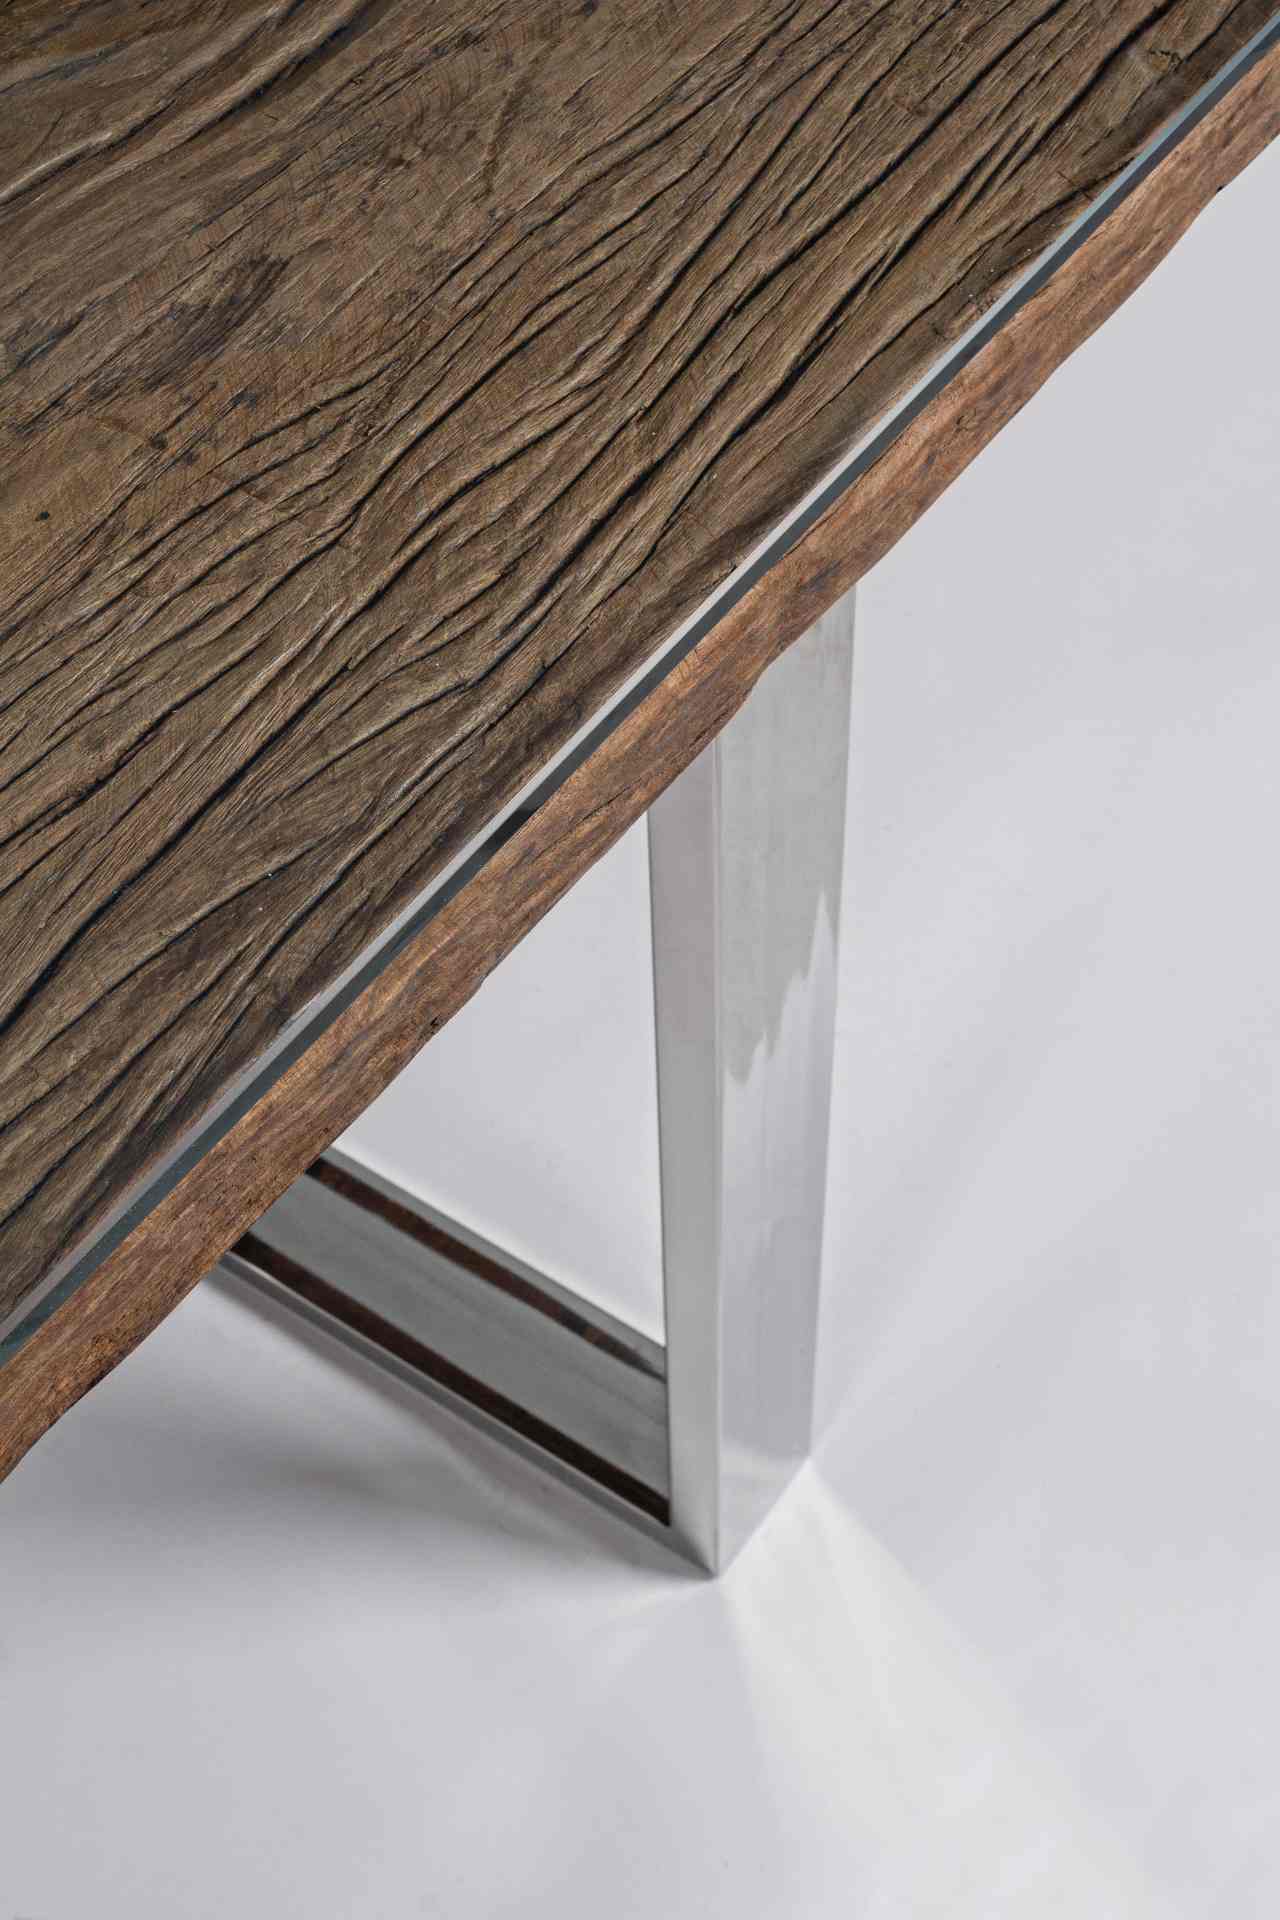 Der Esstisch Stanton überzeugt mit seinem moderndem Design gefertigt wurde er aus recyceltem Holz, welches einen natürlichen Farbton besitzt. Das Gestell des Tisches ist aus Metall und ist in einer silbernen Farbe. Der Tisch besitzt eine Breite von 220 cm